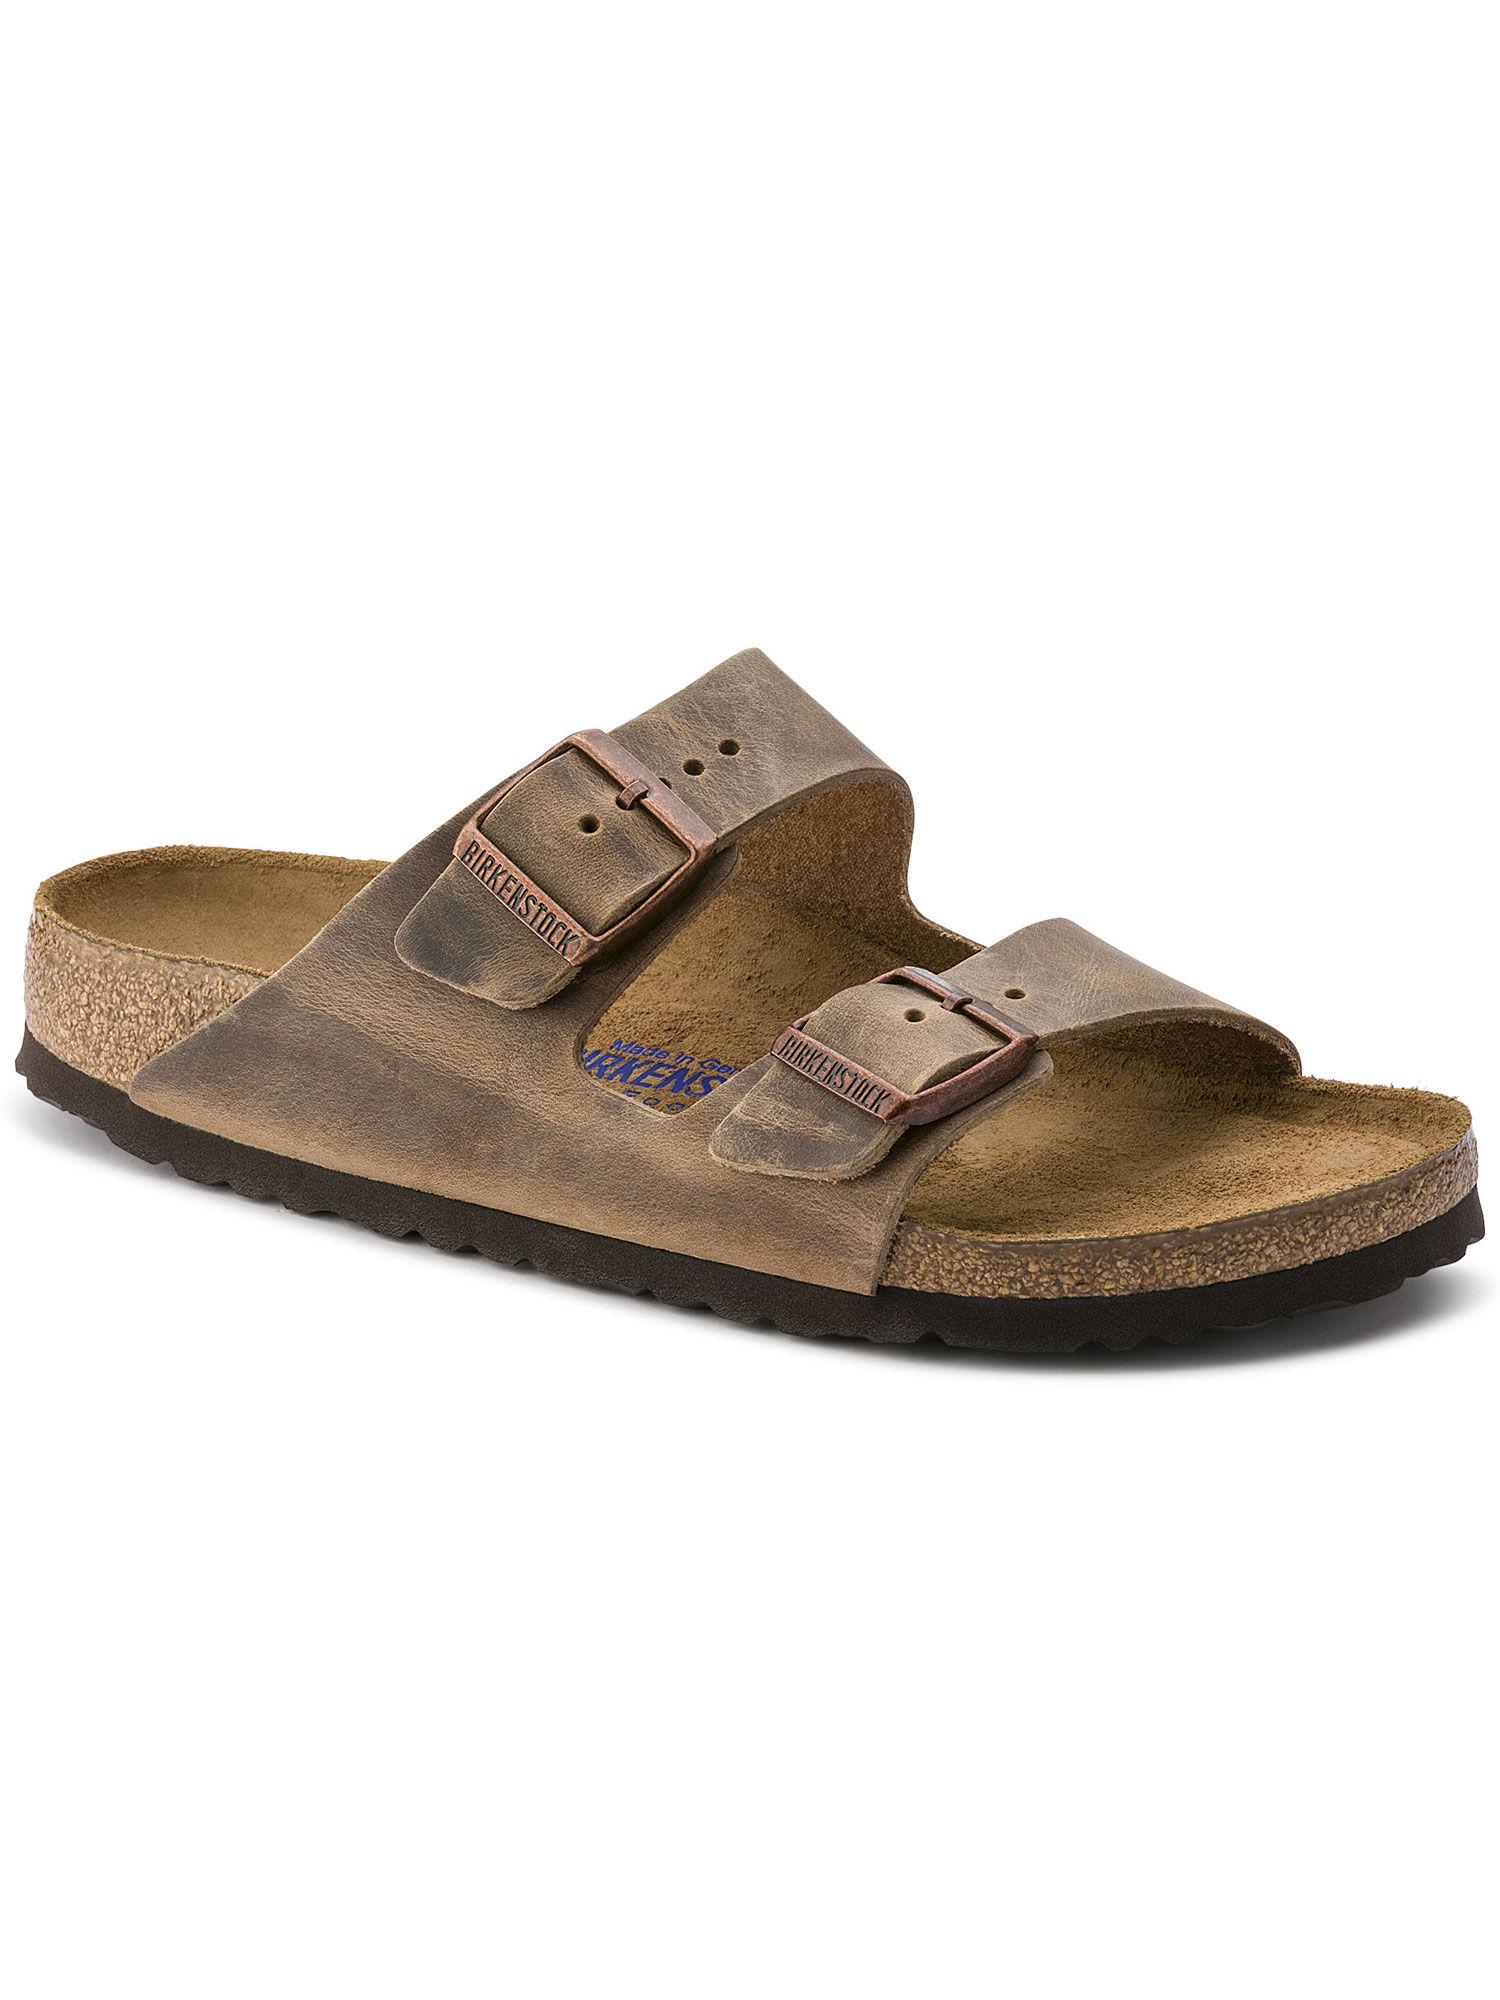 Brown Arizona Solid Regular Width Sandals